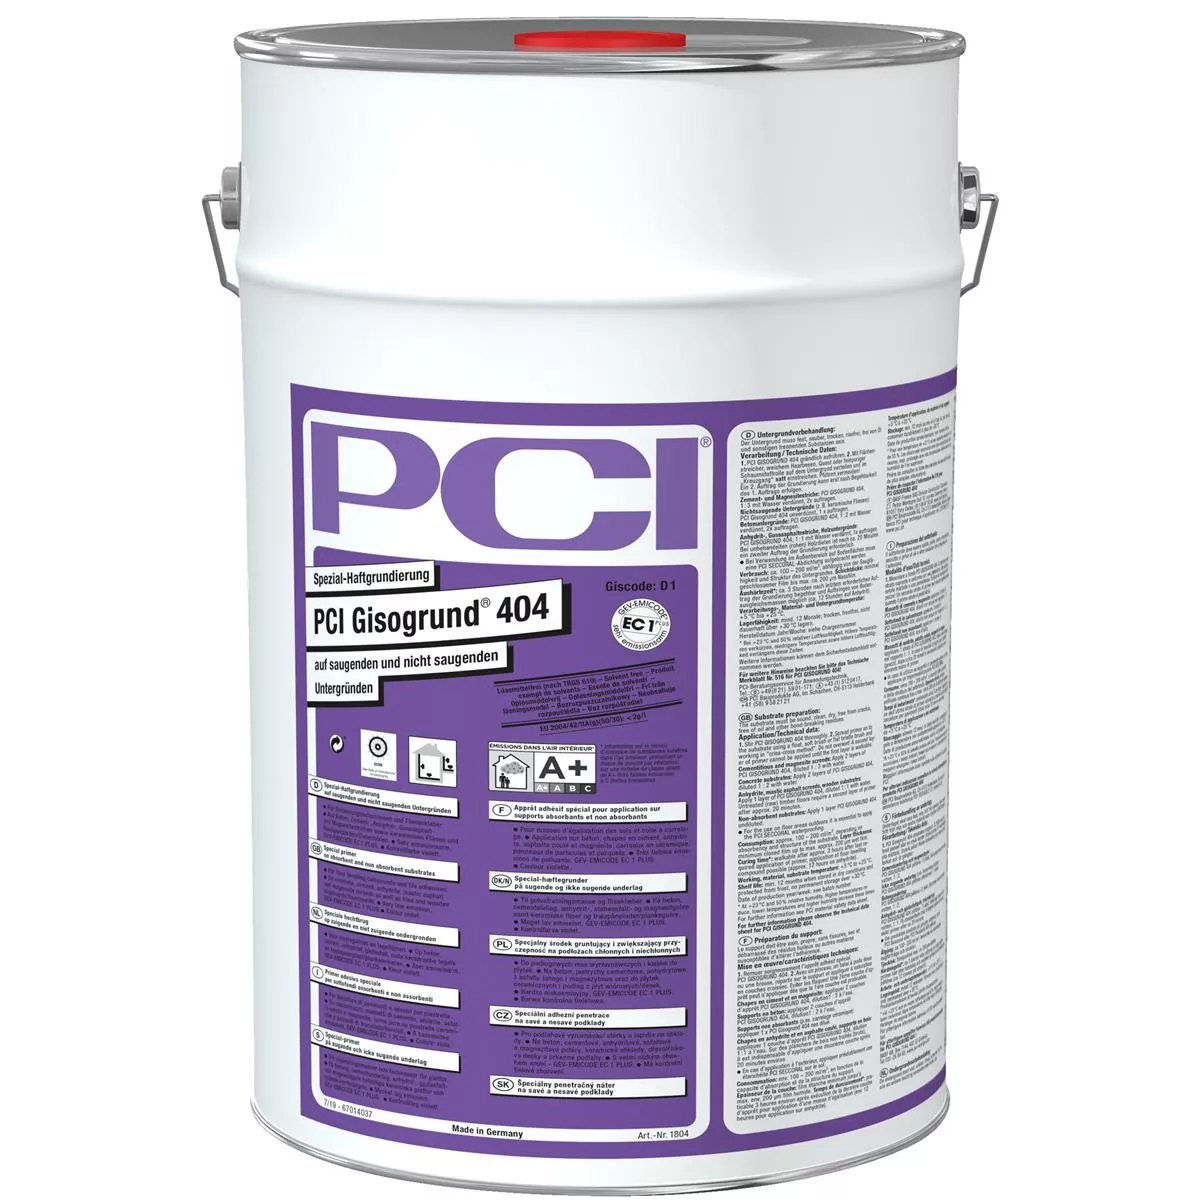 PCI Gisogrund 404 specialvidhäftningsprimer violett 20 liter